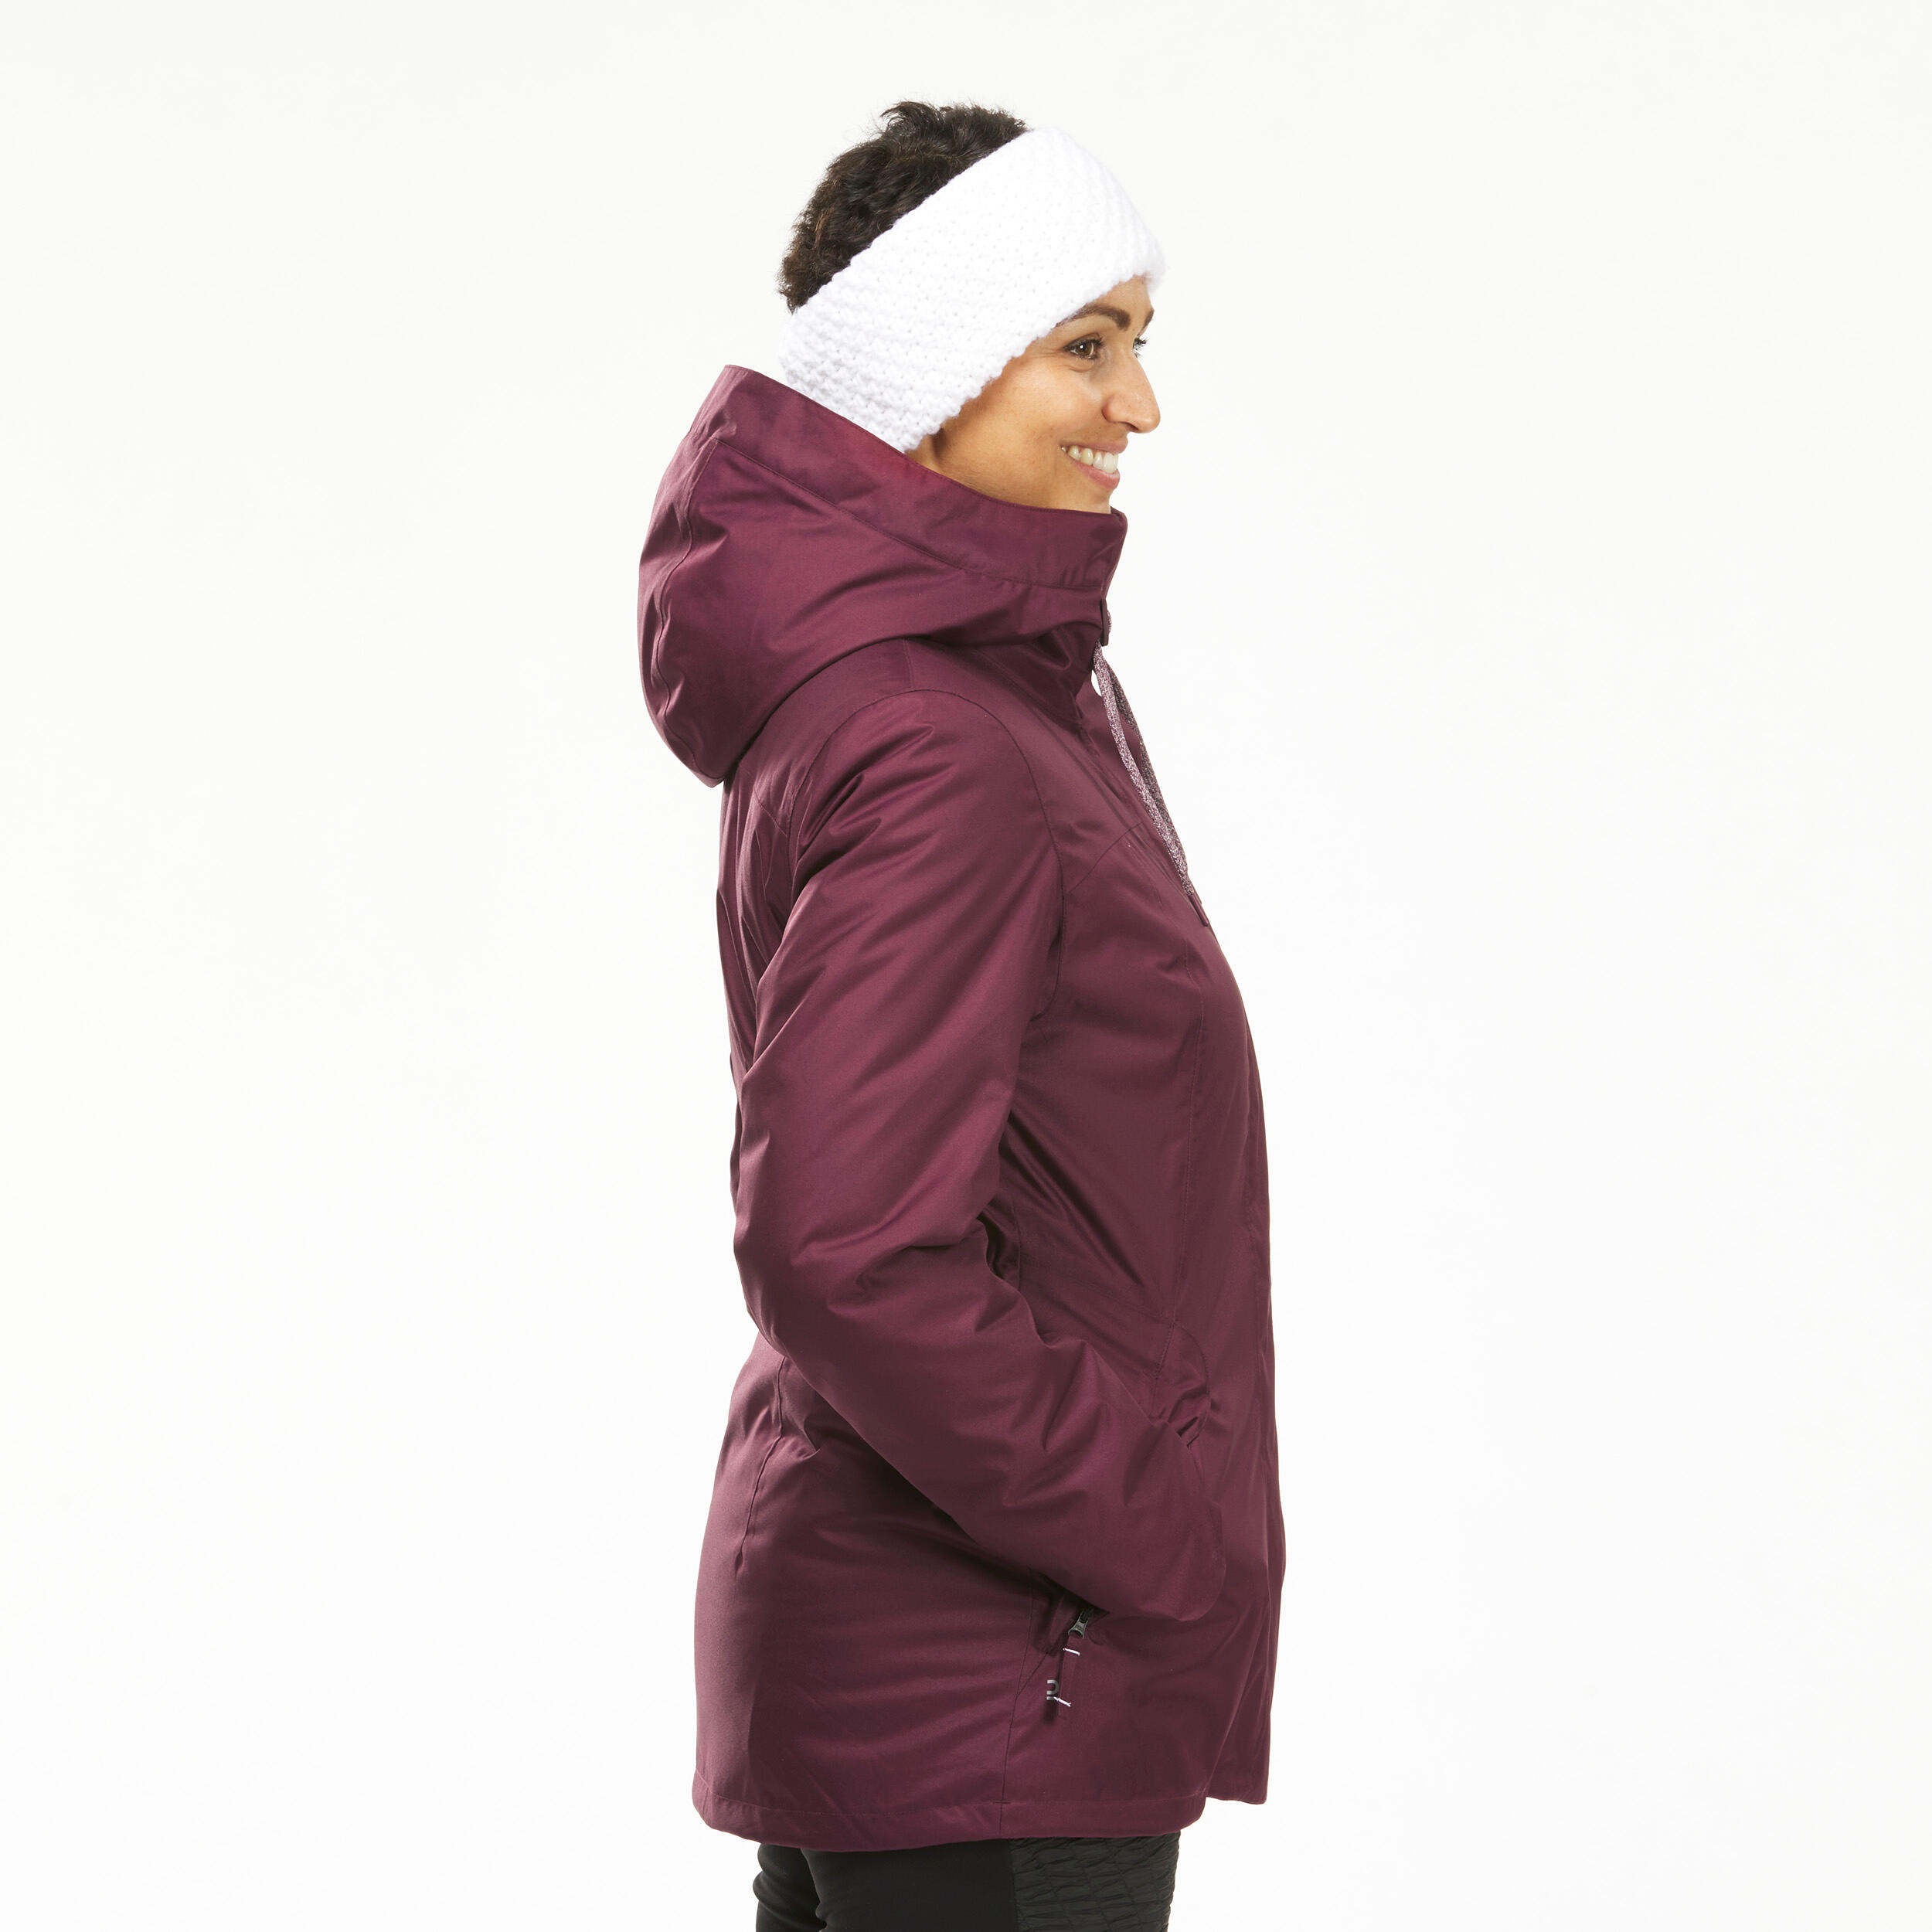 Women’s hiking waterproof winter jacket - SH500 -10°C 6/11